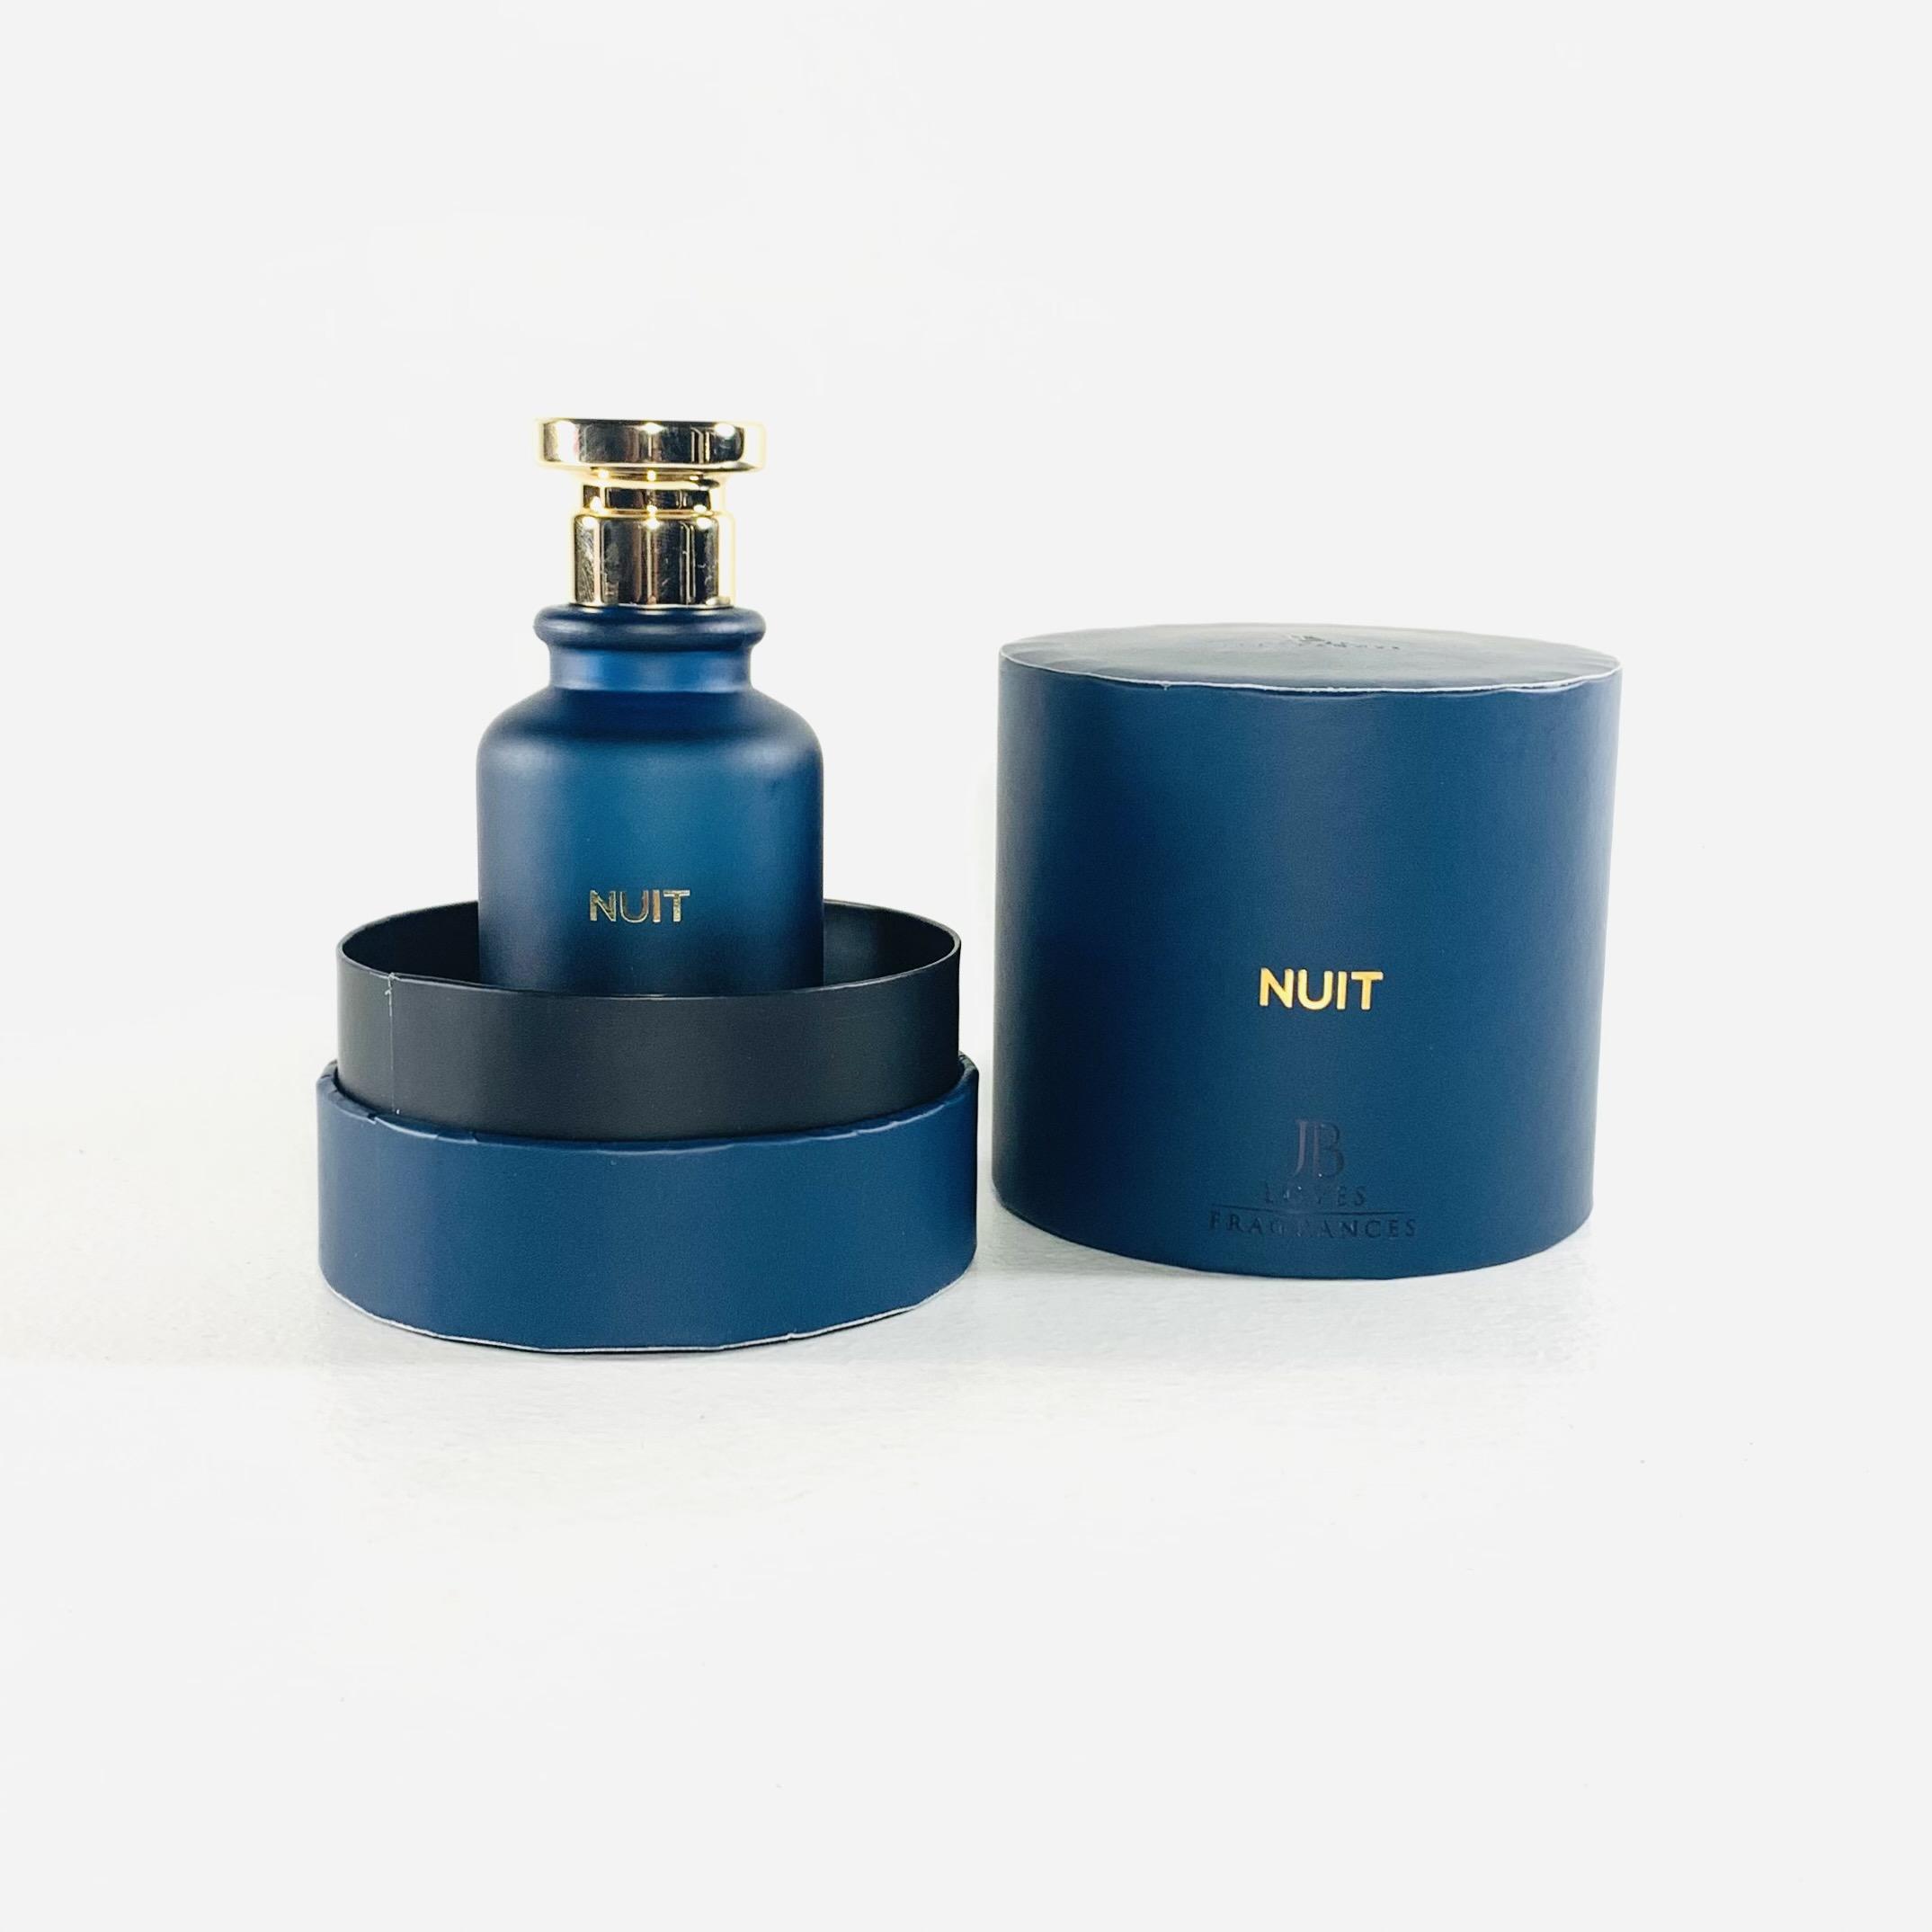 Nuit – Jb Fragrance – Eau de parfum 100ml